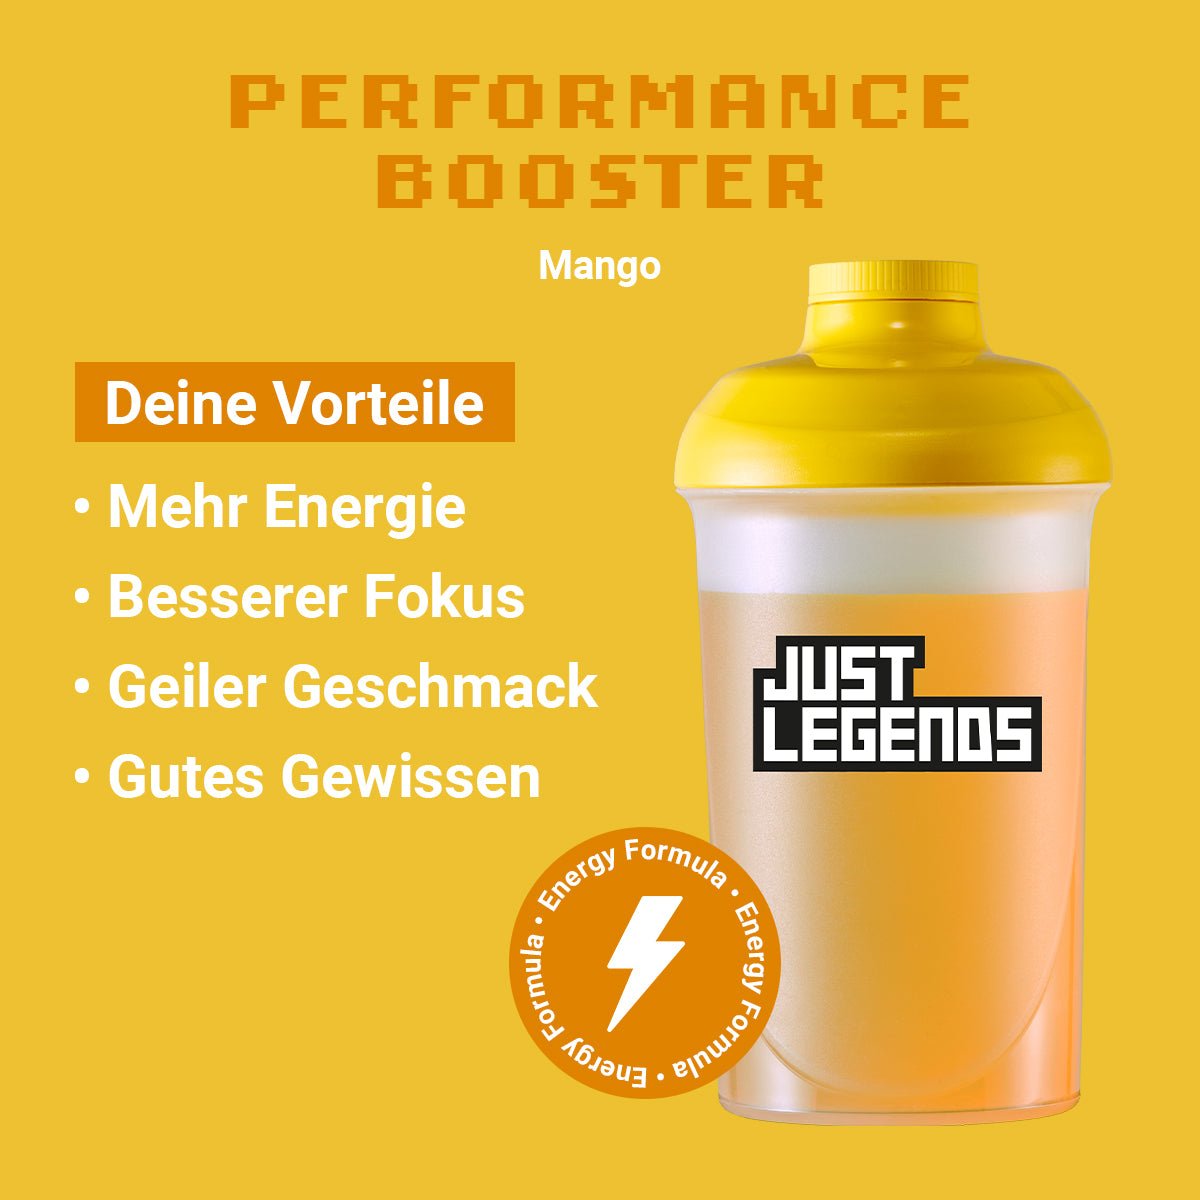 Just Legends Performance Booster Mango | Funktionaler, veganer Performance Booster auf Pulverbasis ohne Zucker, mit wenig Kalorien, vielen Vitaminen und natürlichen Aromen.